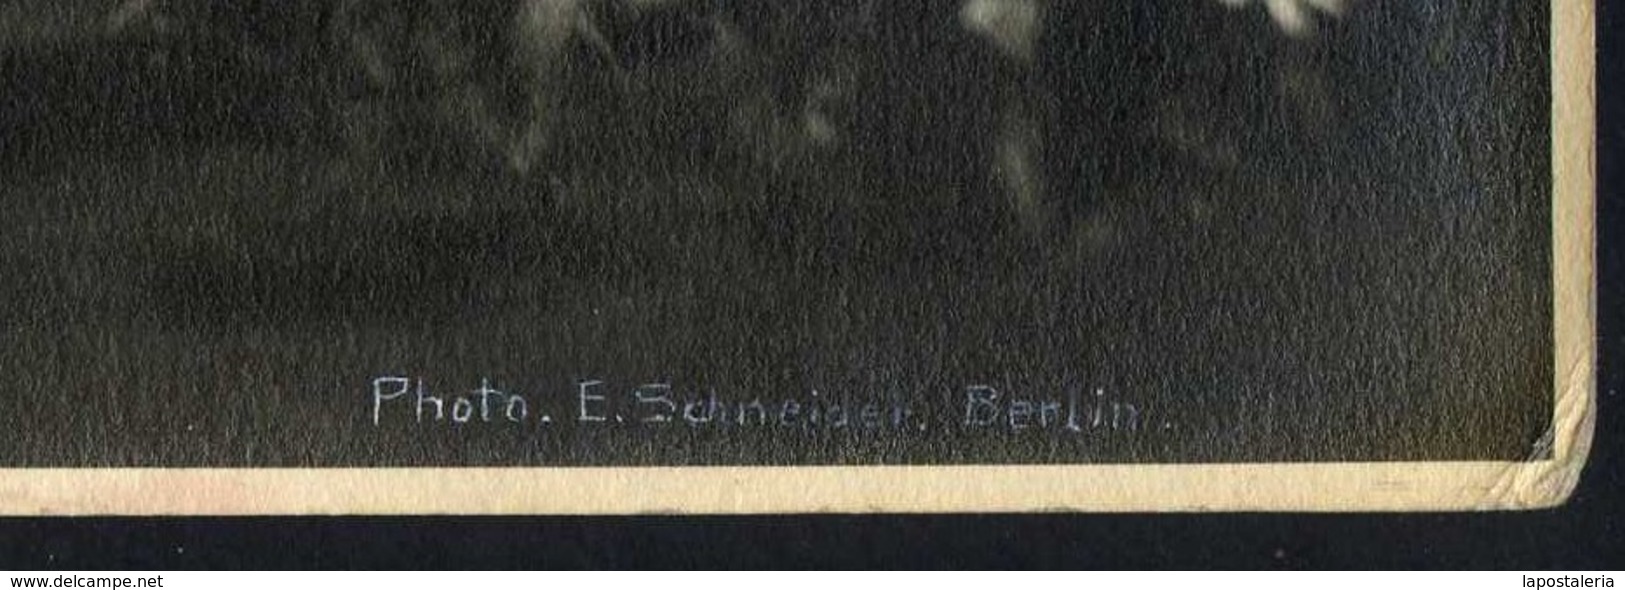 *Ernst Schneider, Berlin* Lote 3 fotos 233x291 mms. Firmadas ángulo inferior derecha.